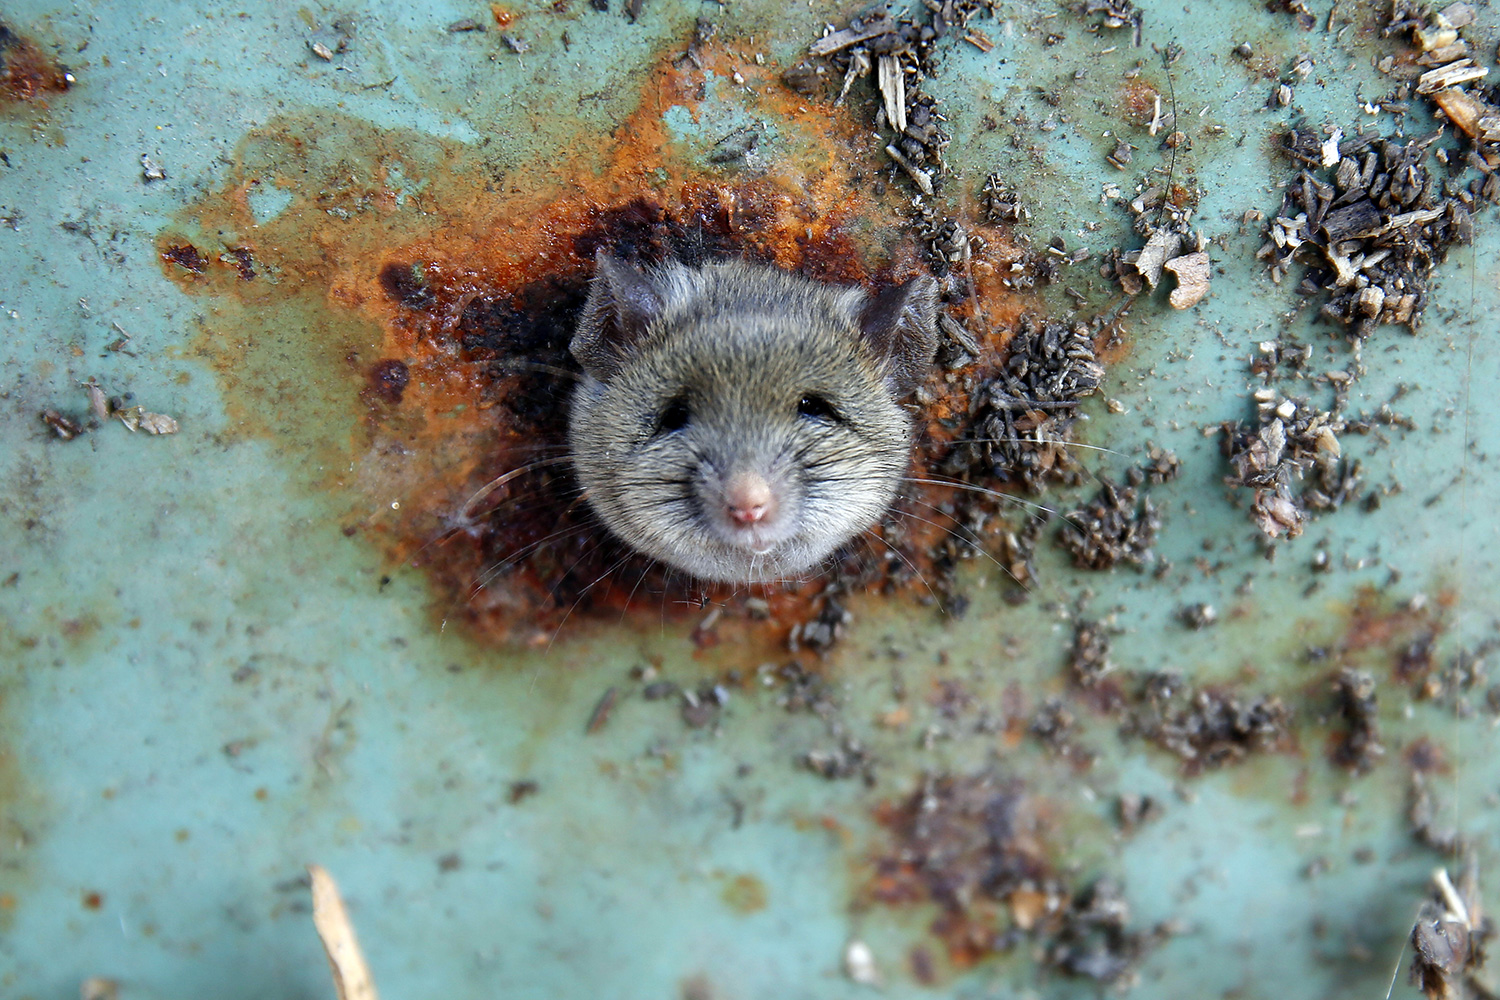 A la caza de los roedores: Yakarta pagará 1,20 libras por rata capturada